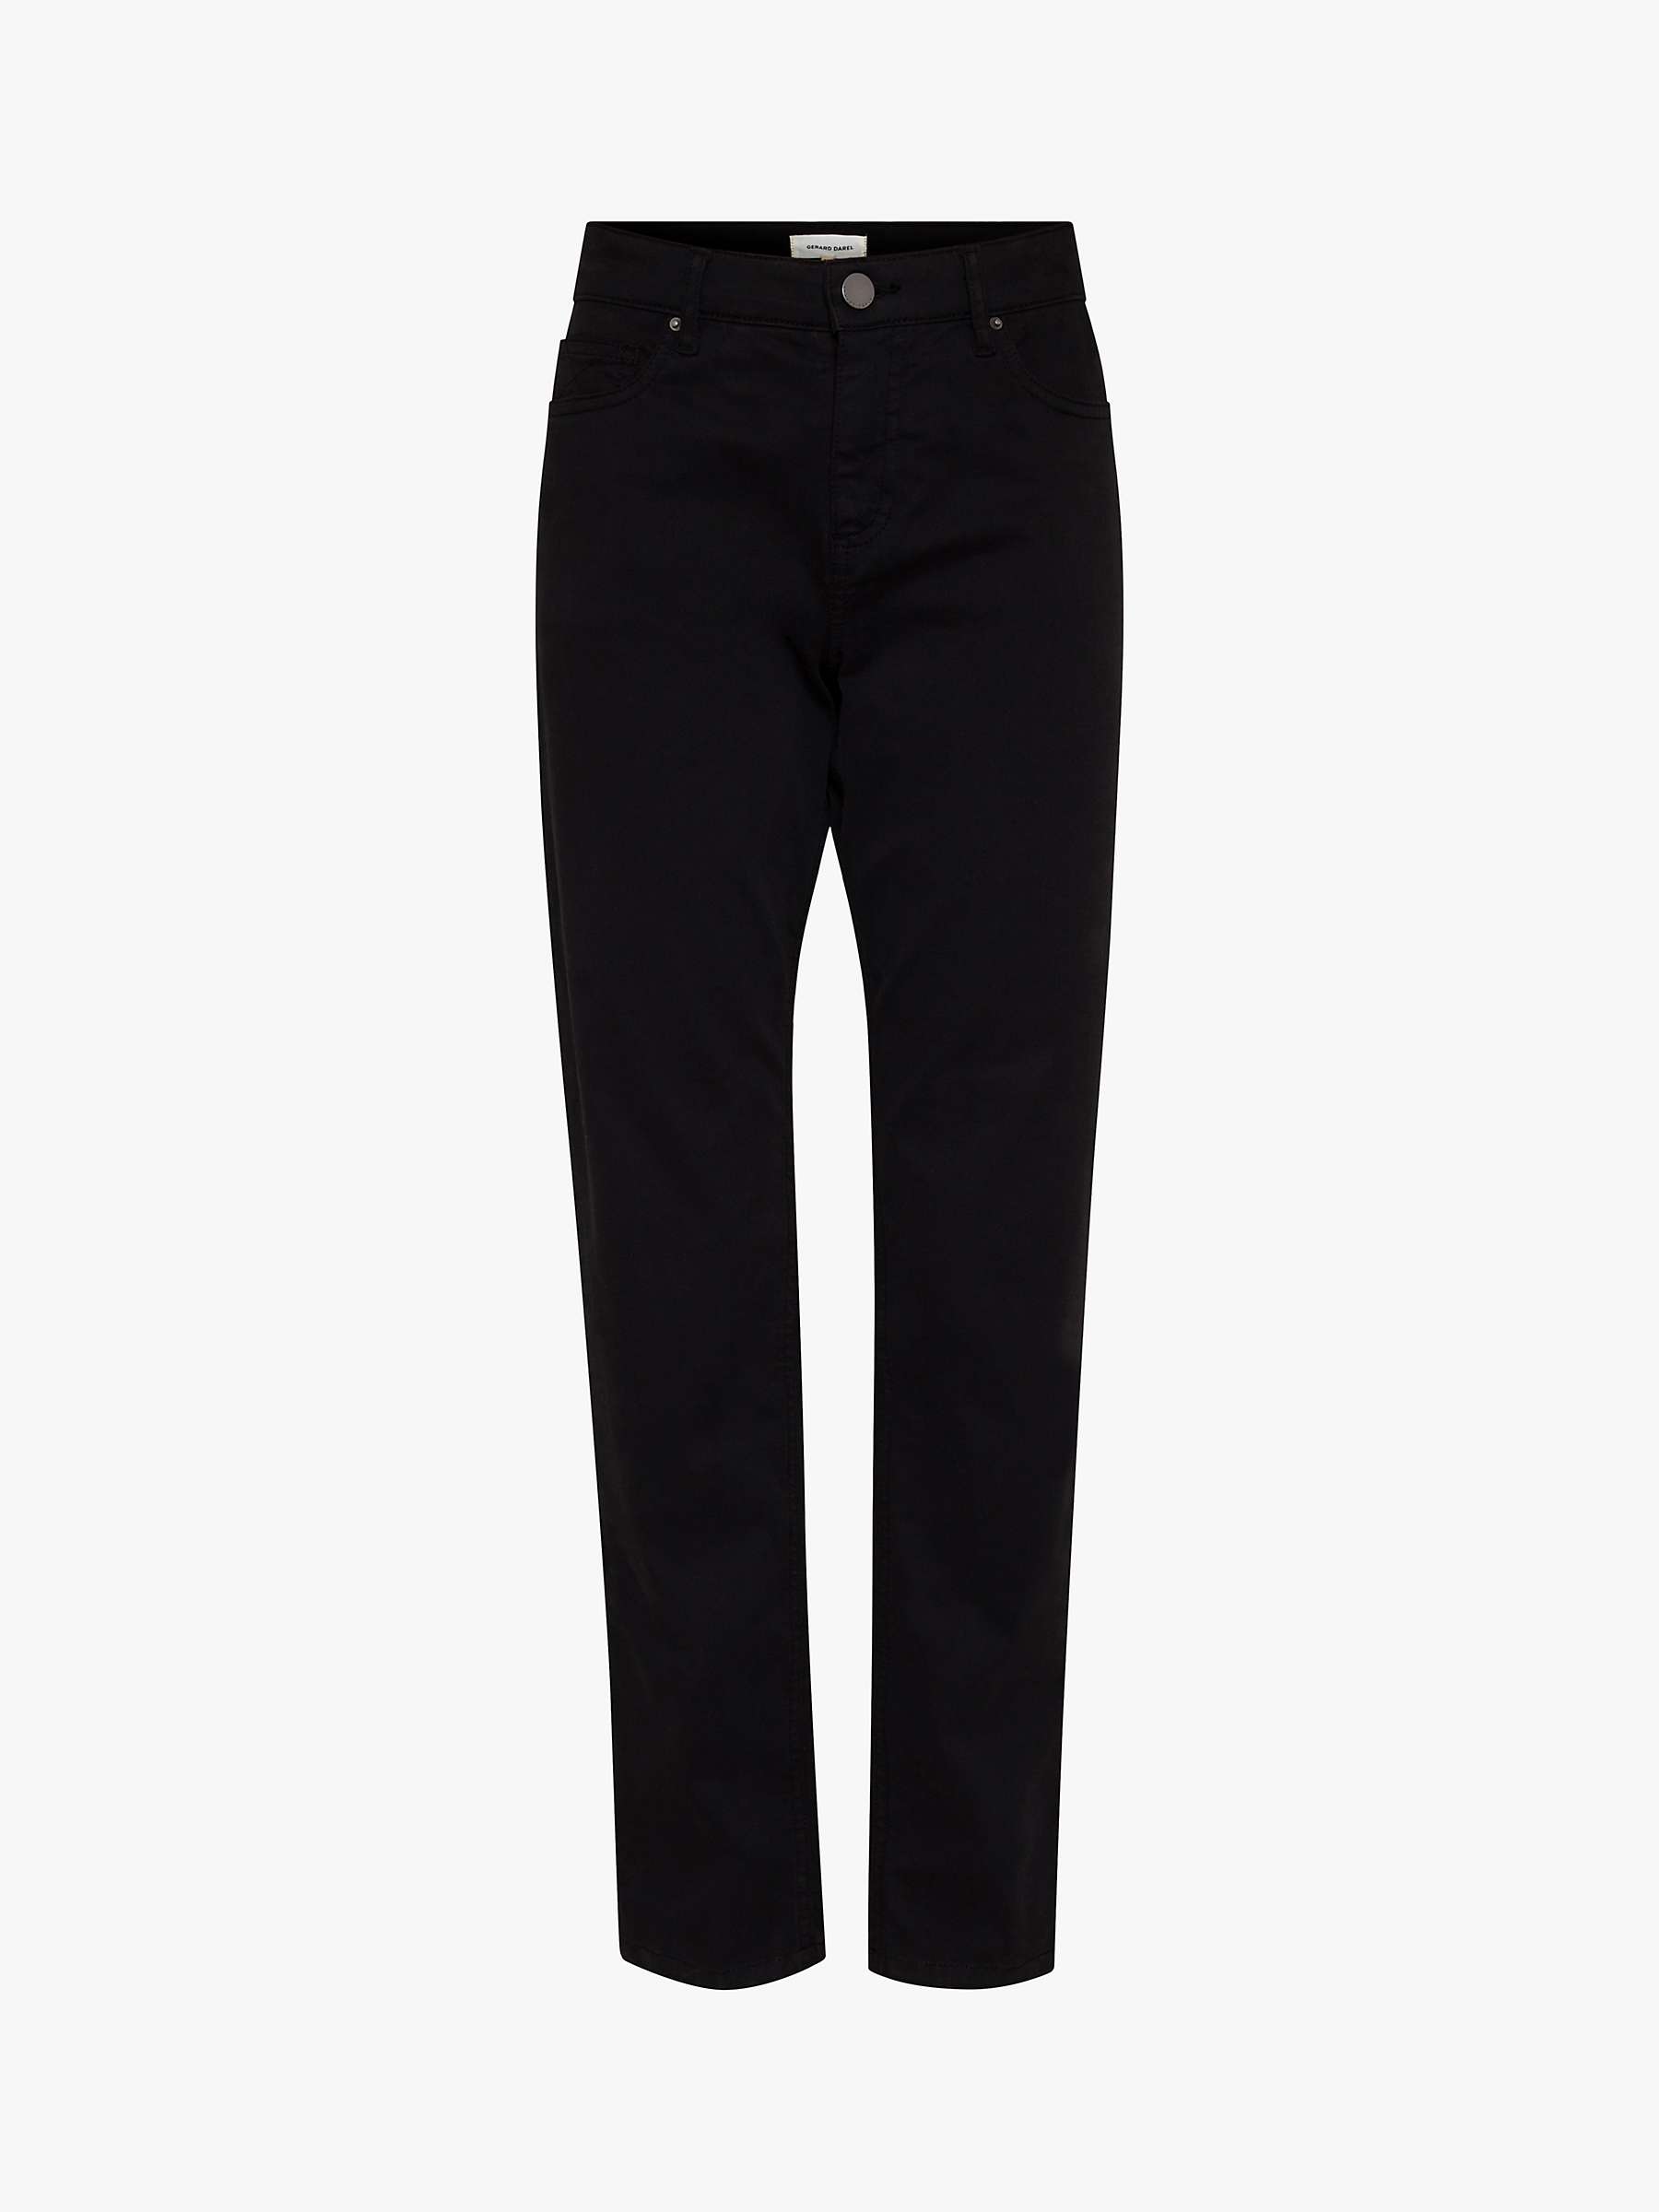 Buy Gerard Darel Liam Skinny Jeans, Black Online at johnlewis.com